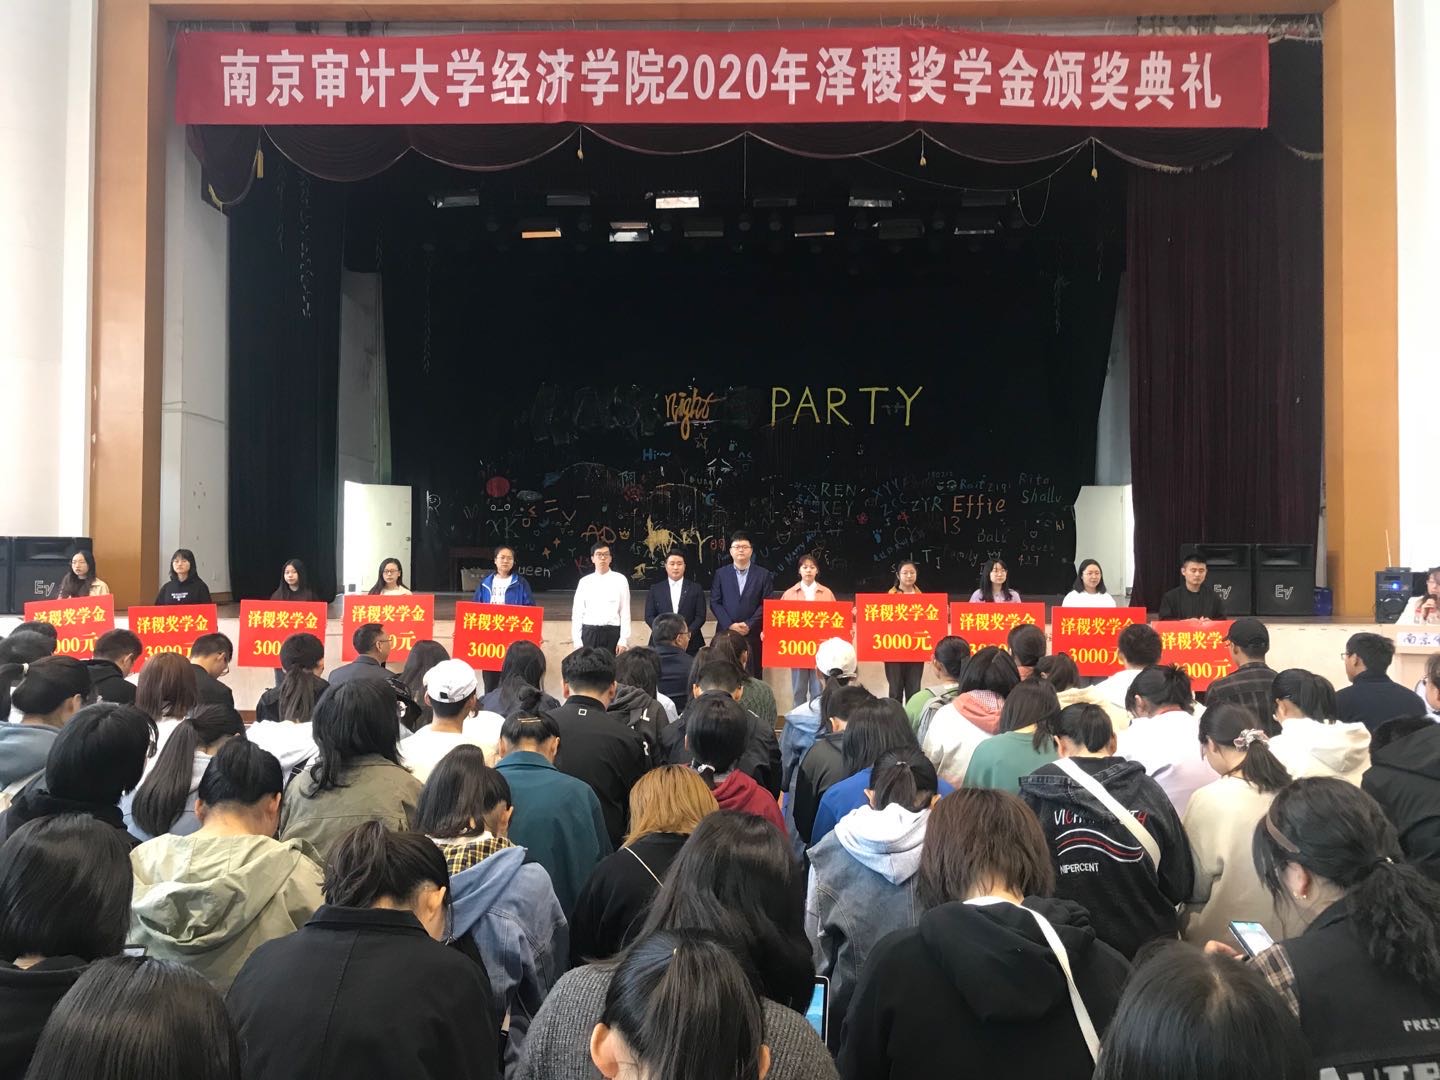 南京审计大学经济学院举行2020年“泽稷教育奖学金”颁奖典礼